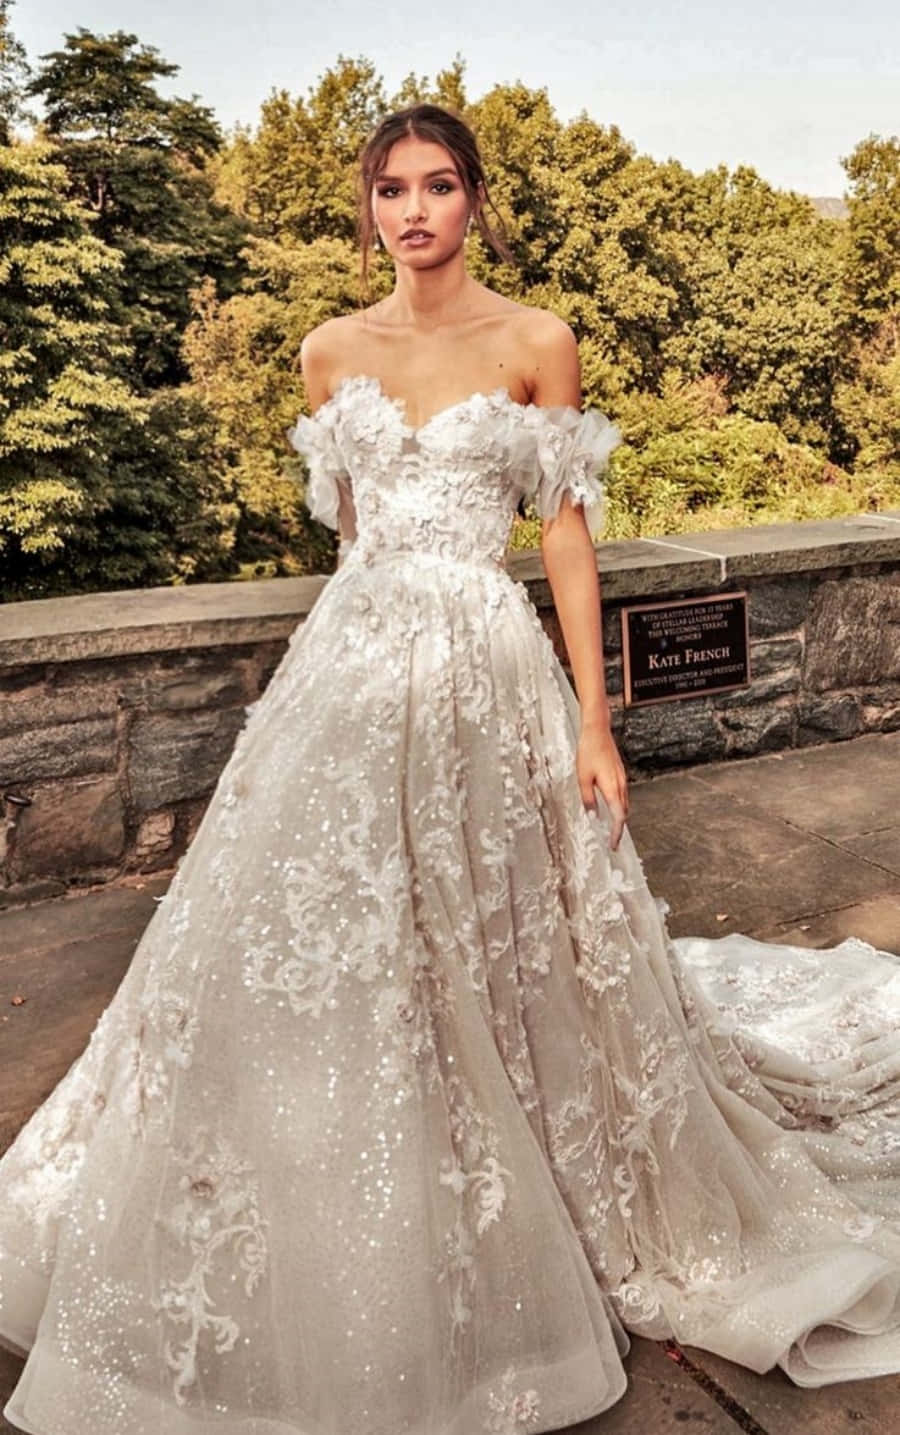 Elegant Bride in a Stunning Wedding Gown